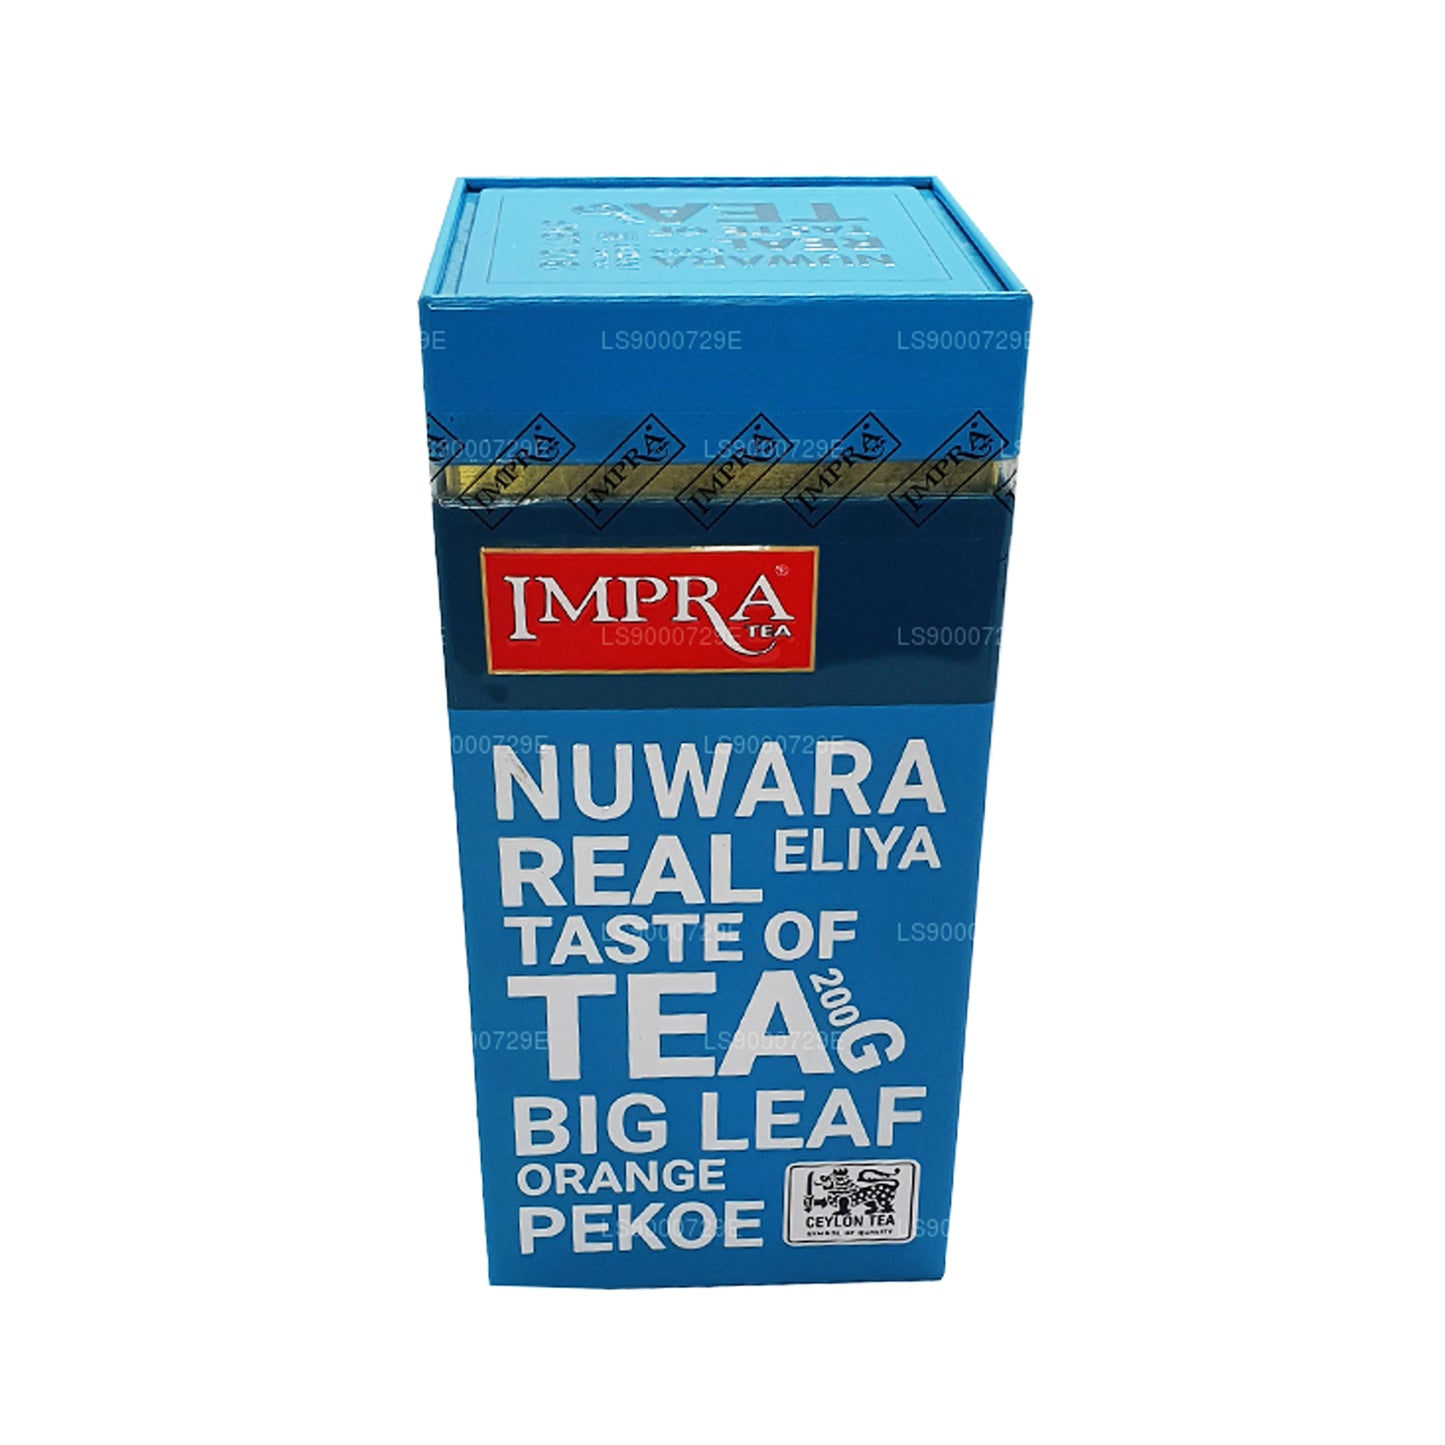 Impra Nuwara Eliya Big Leaf (200g) Meatal Caddy